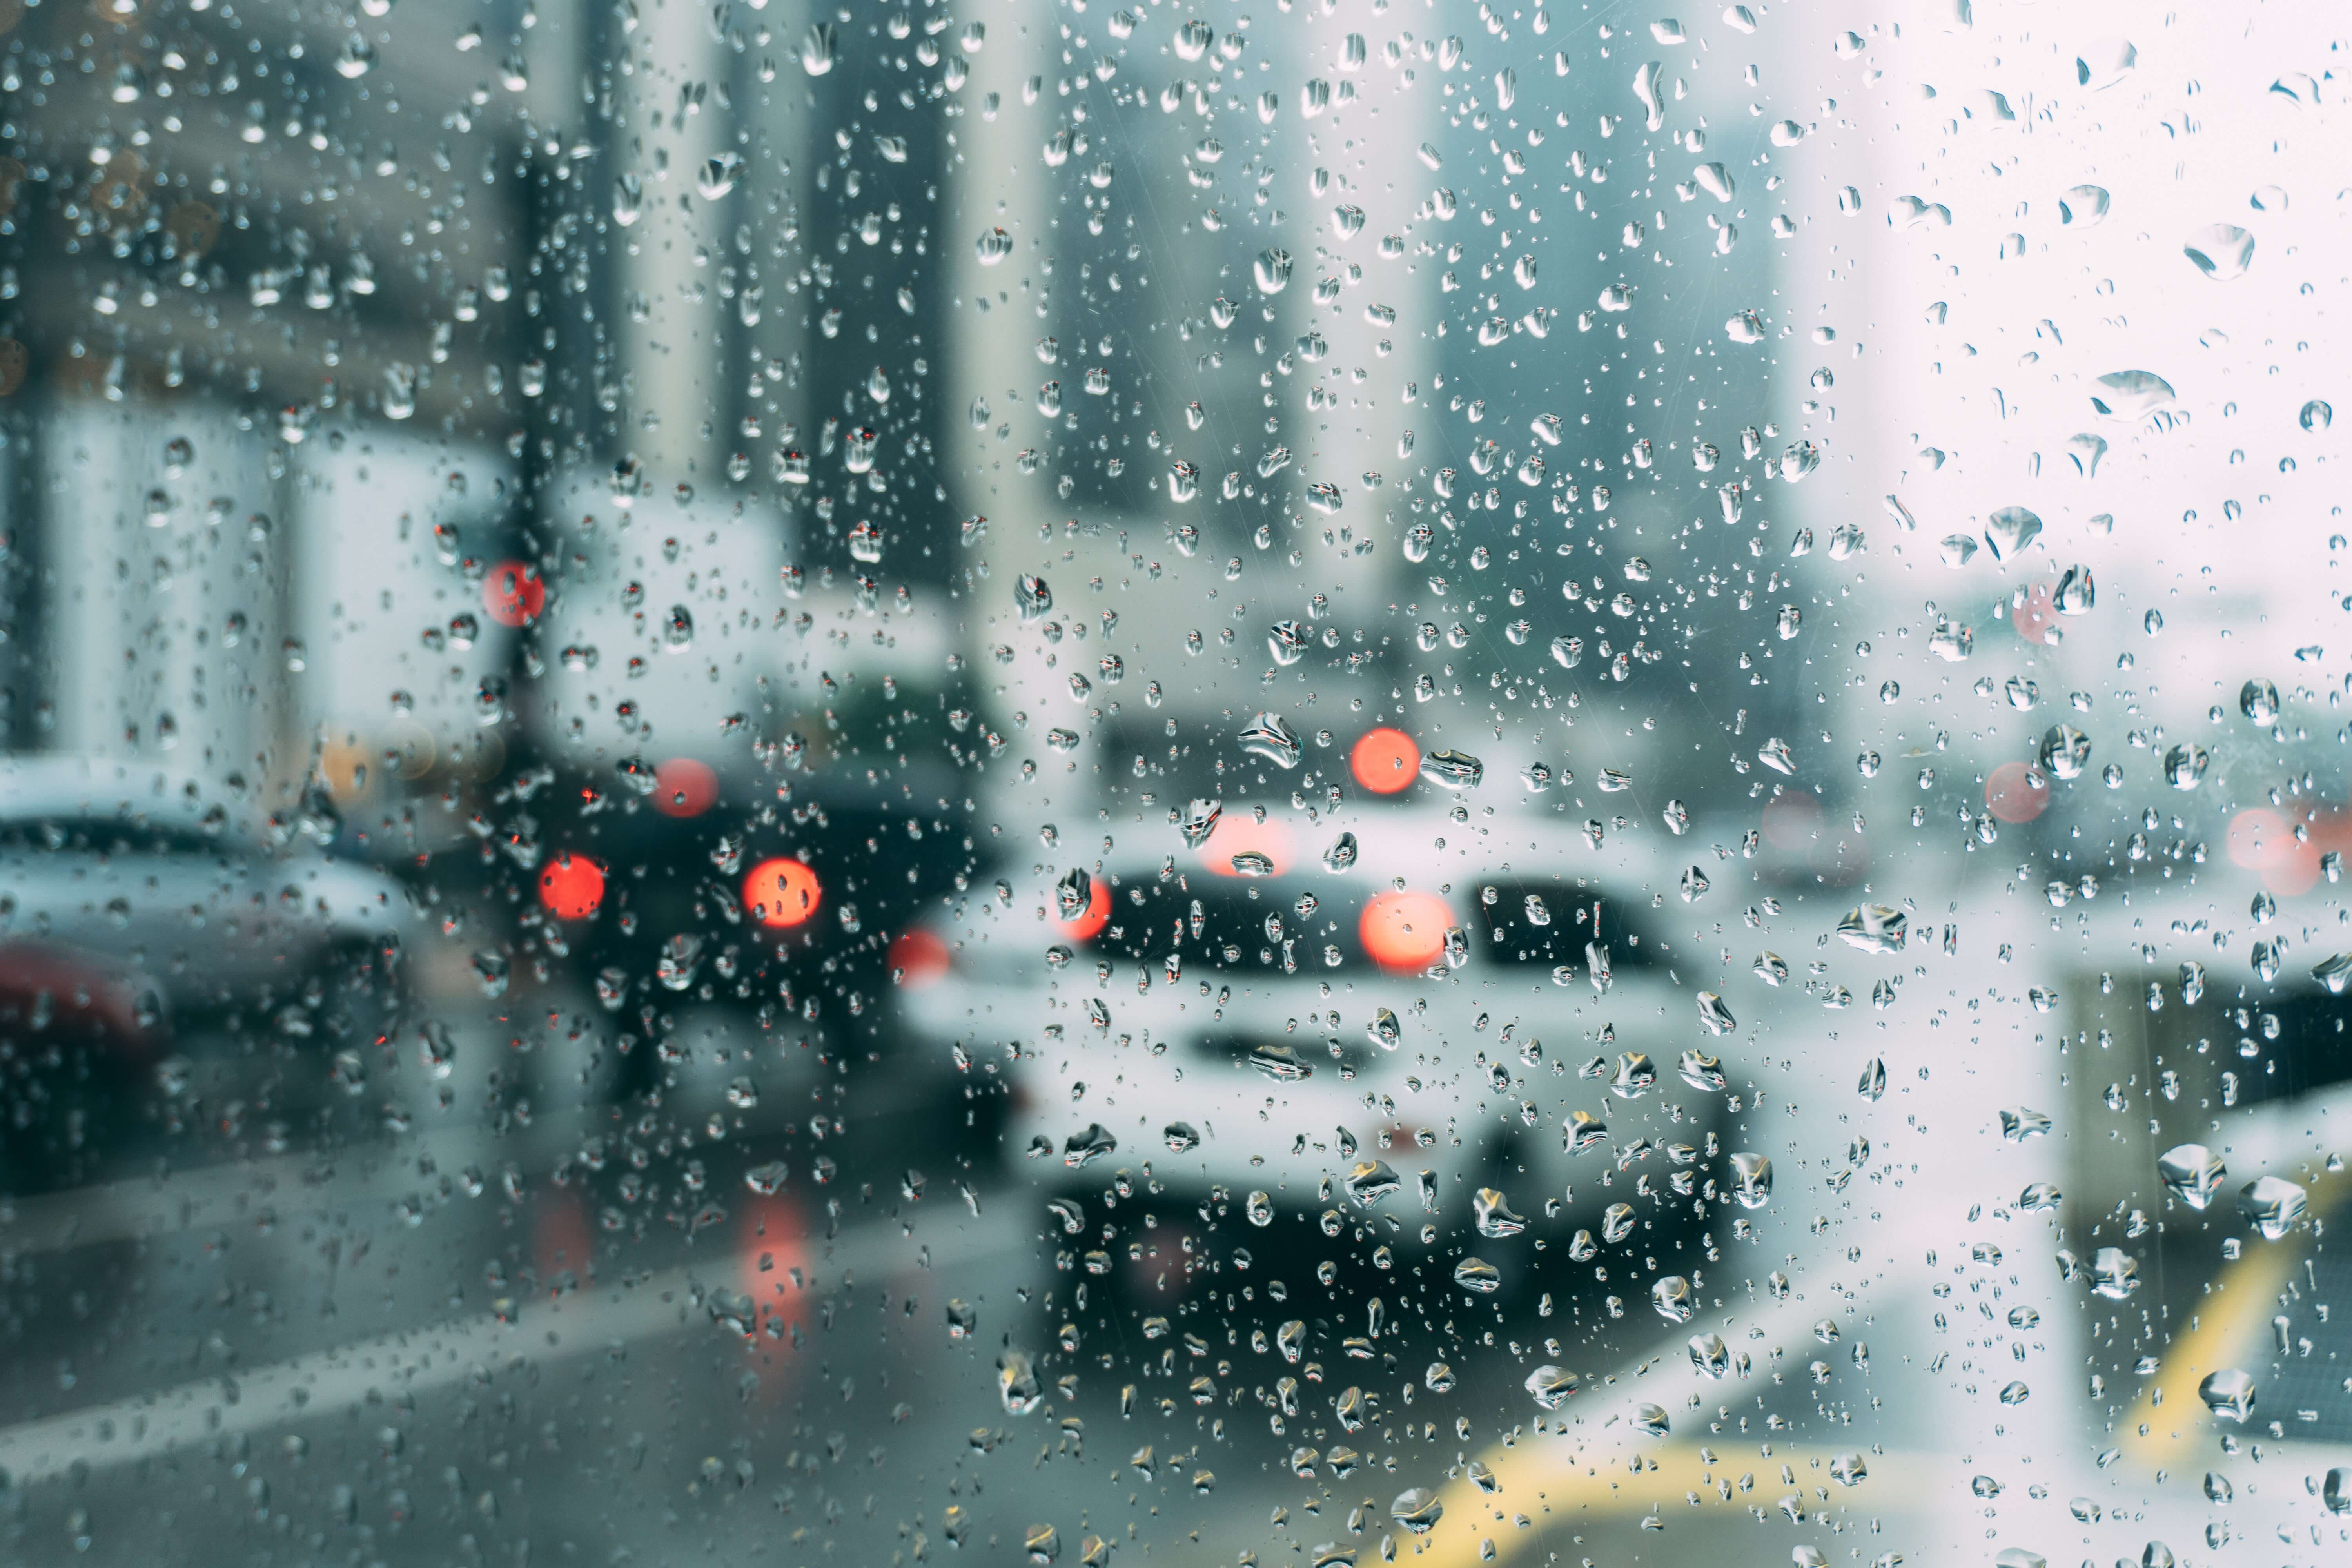 비오는 날 차에서 물방울이 맺힌 차창 밖을 내다보는 장면